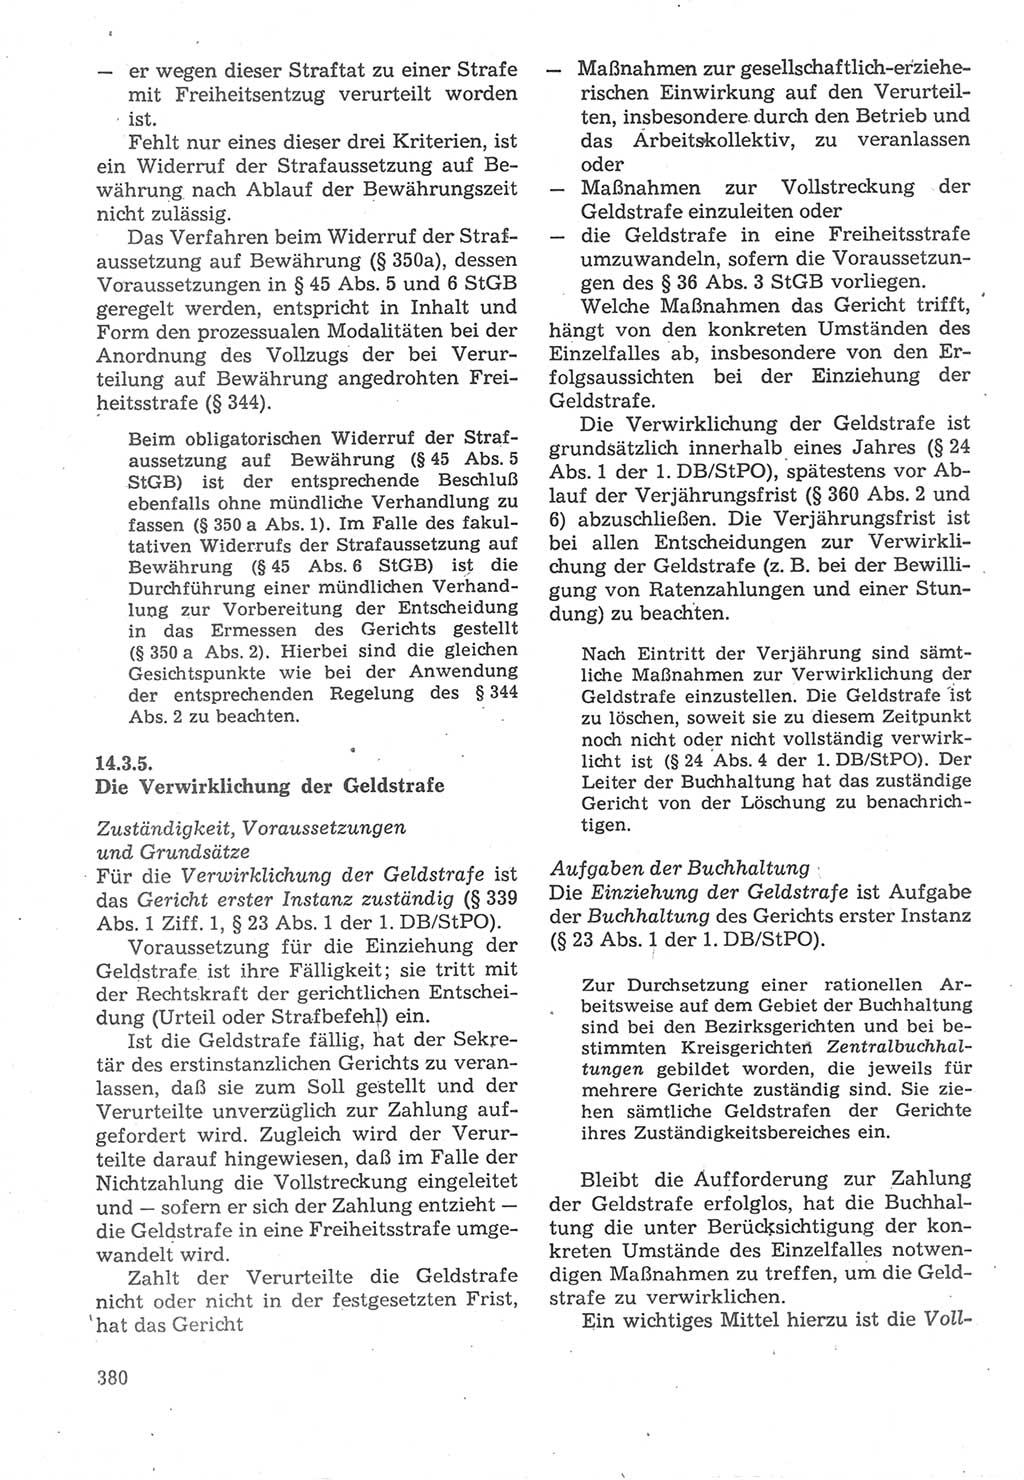 Strafverfahrensrecht [Deutsche Demokratische Republik (DDR)], Lehrbuch 1987, Seite 380 (Strafverf.-R. DDR Lb. 1987, S. 380)